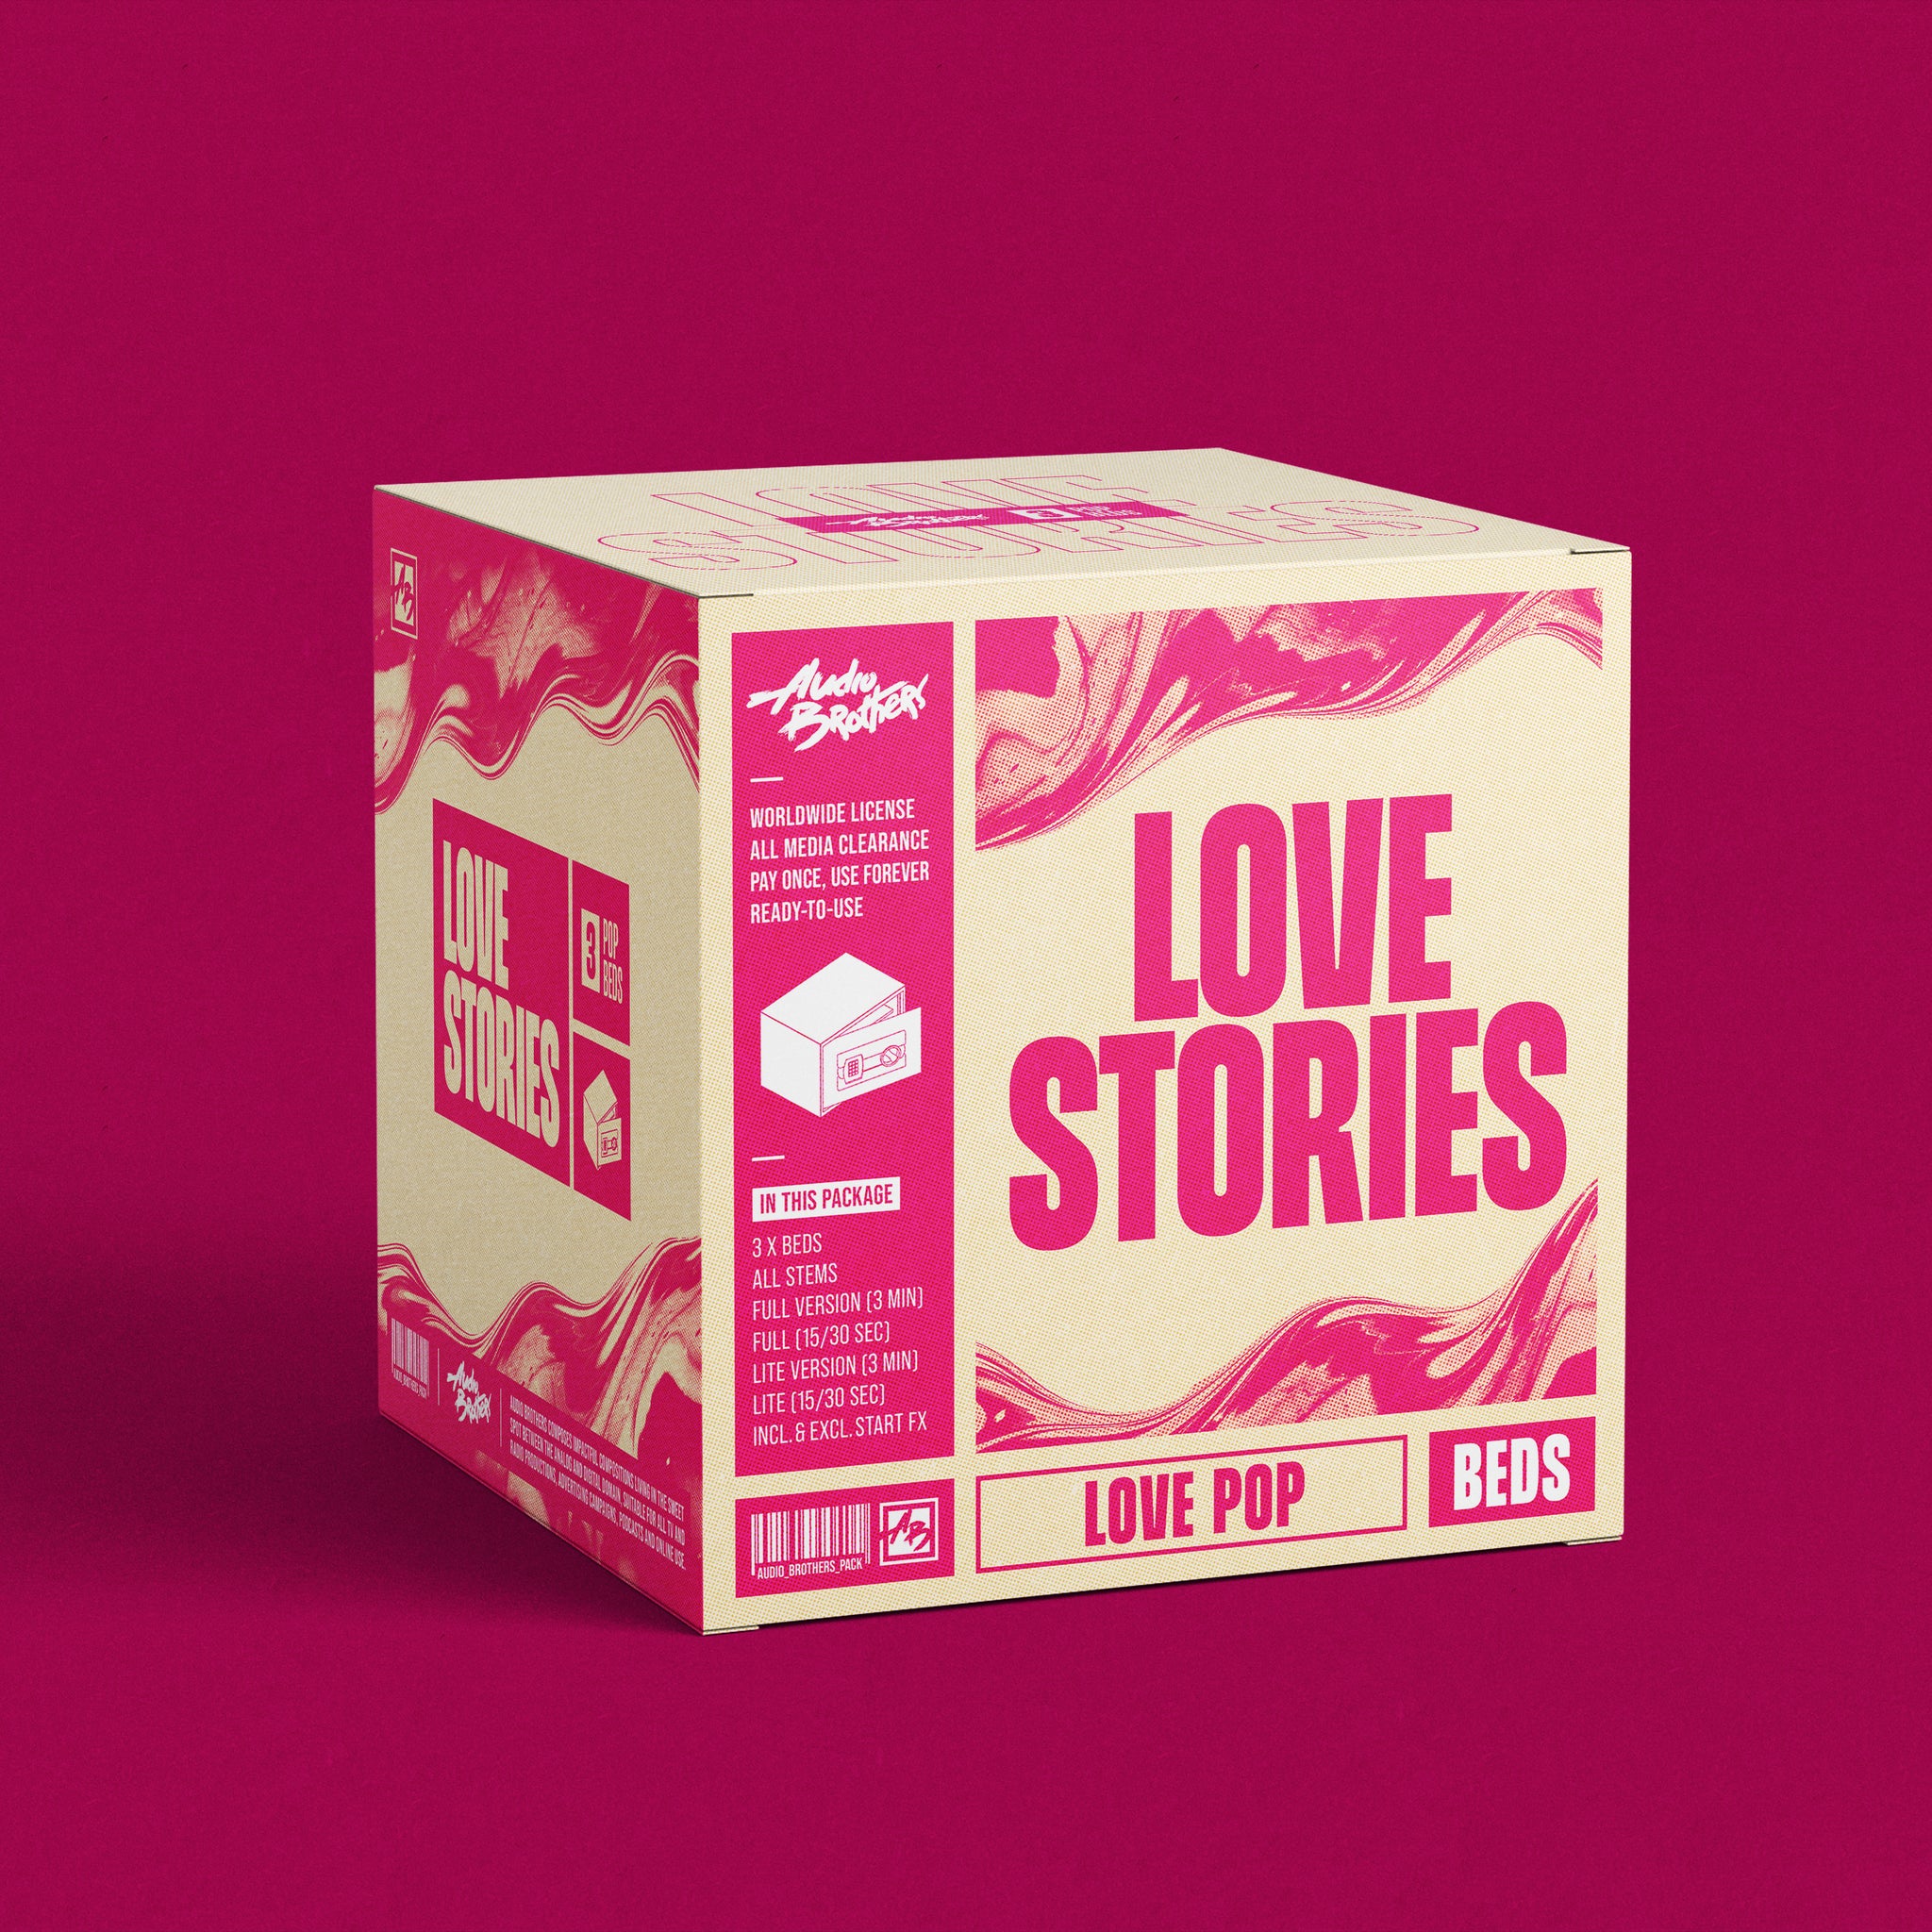 3x Music Beds (Love Pop) - Love Stories